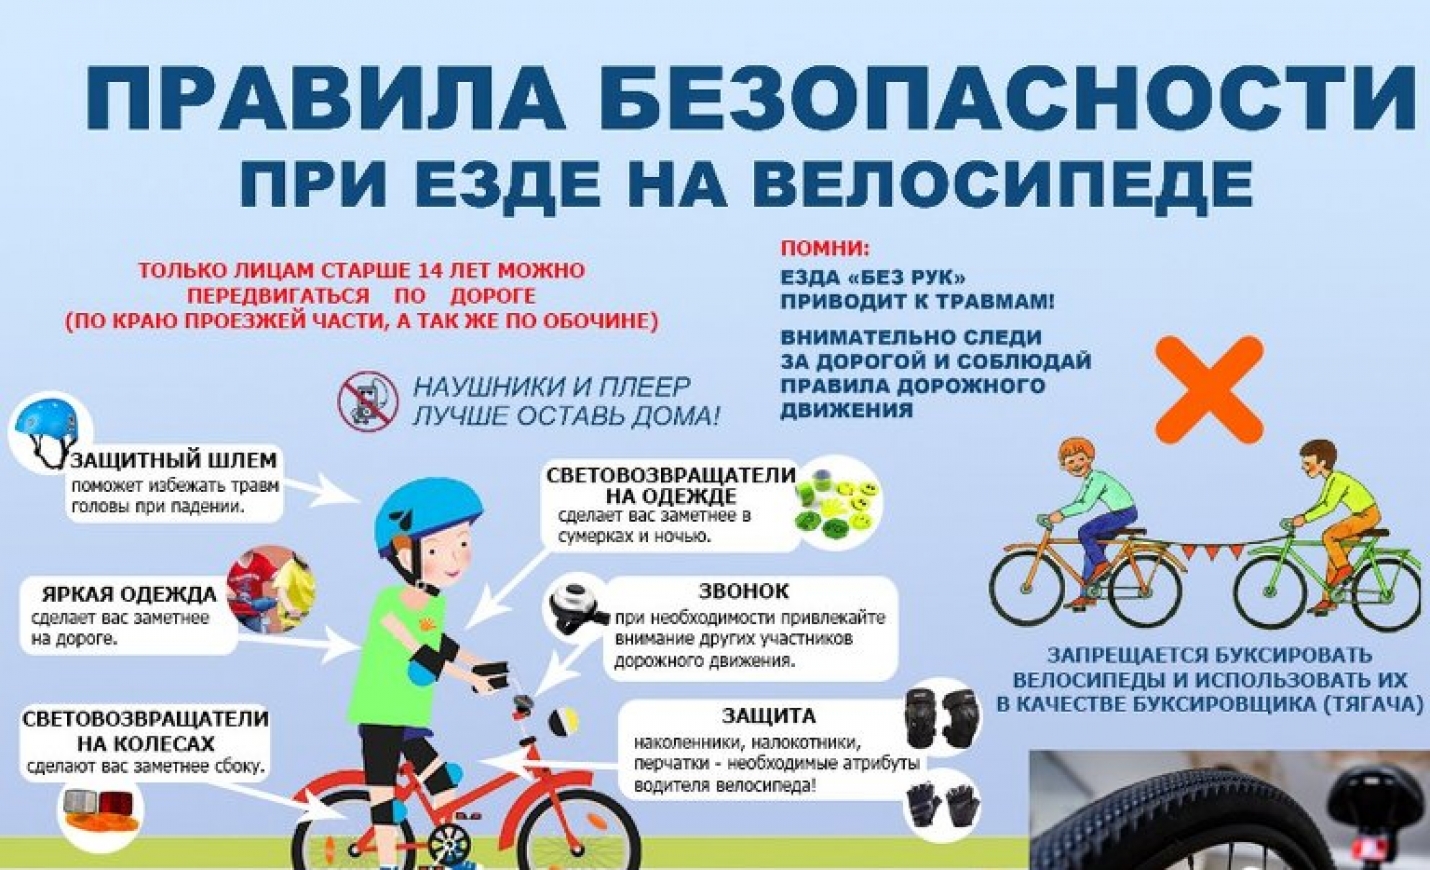 Особенности эксплуатации в летний период. Памятка ПДД для велосипедистов для детей. Правила для велосипедистов. Безопасность езды на велосипеде. Правила езды на велосипеде.